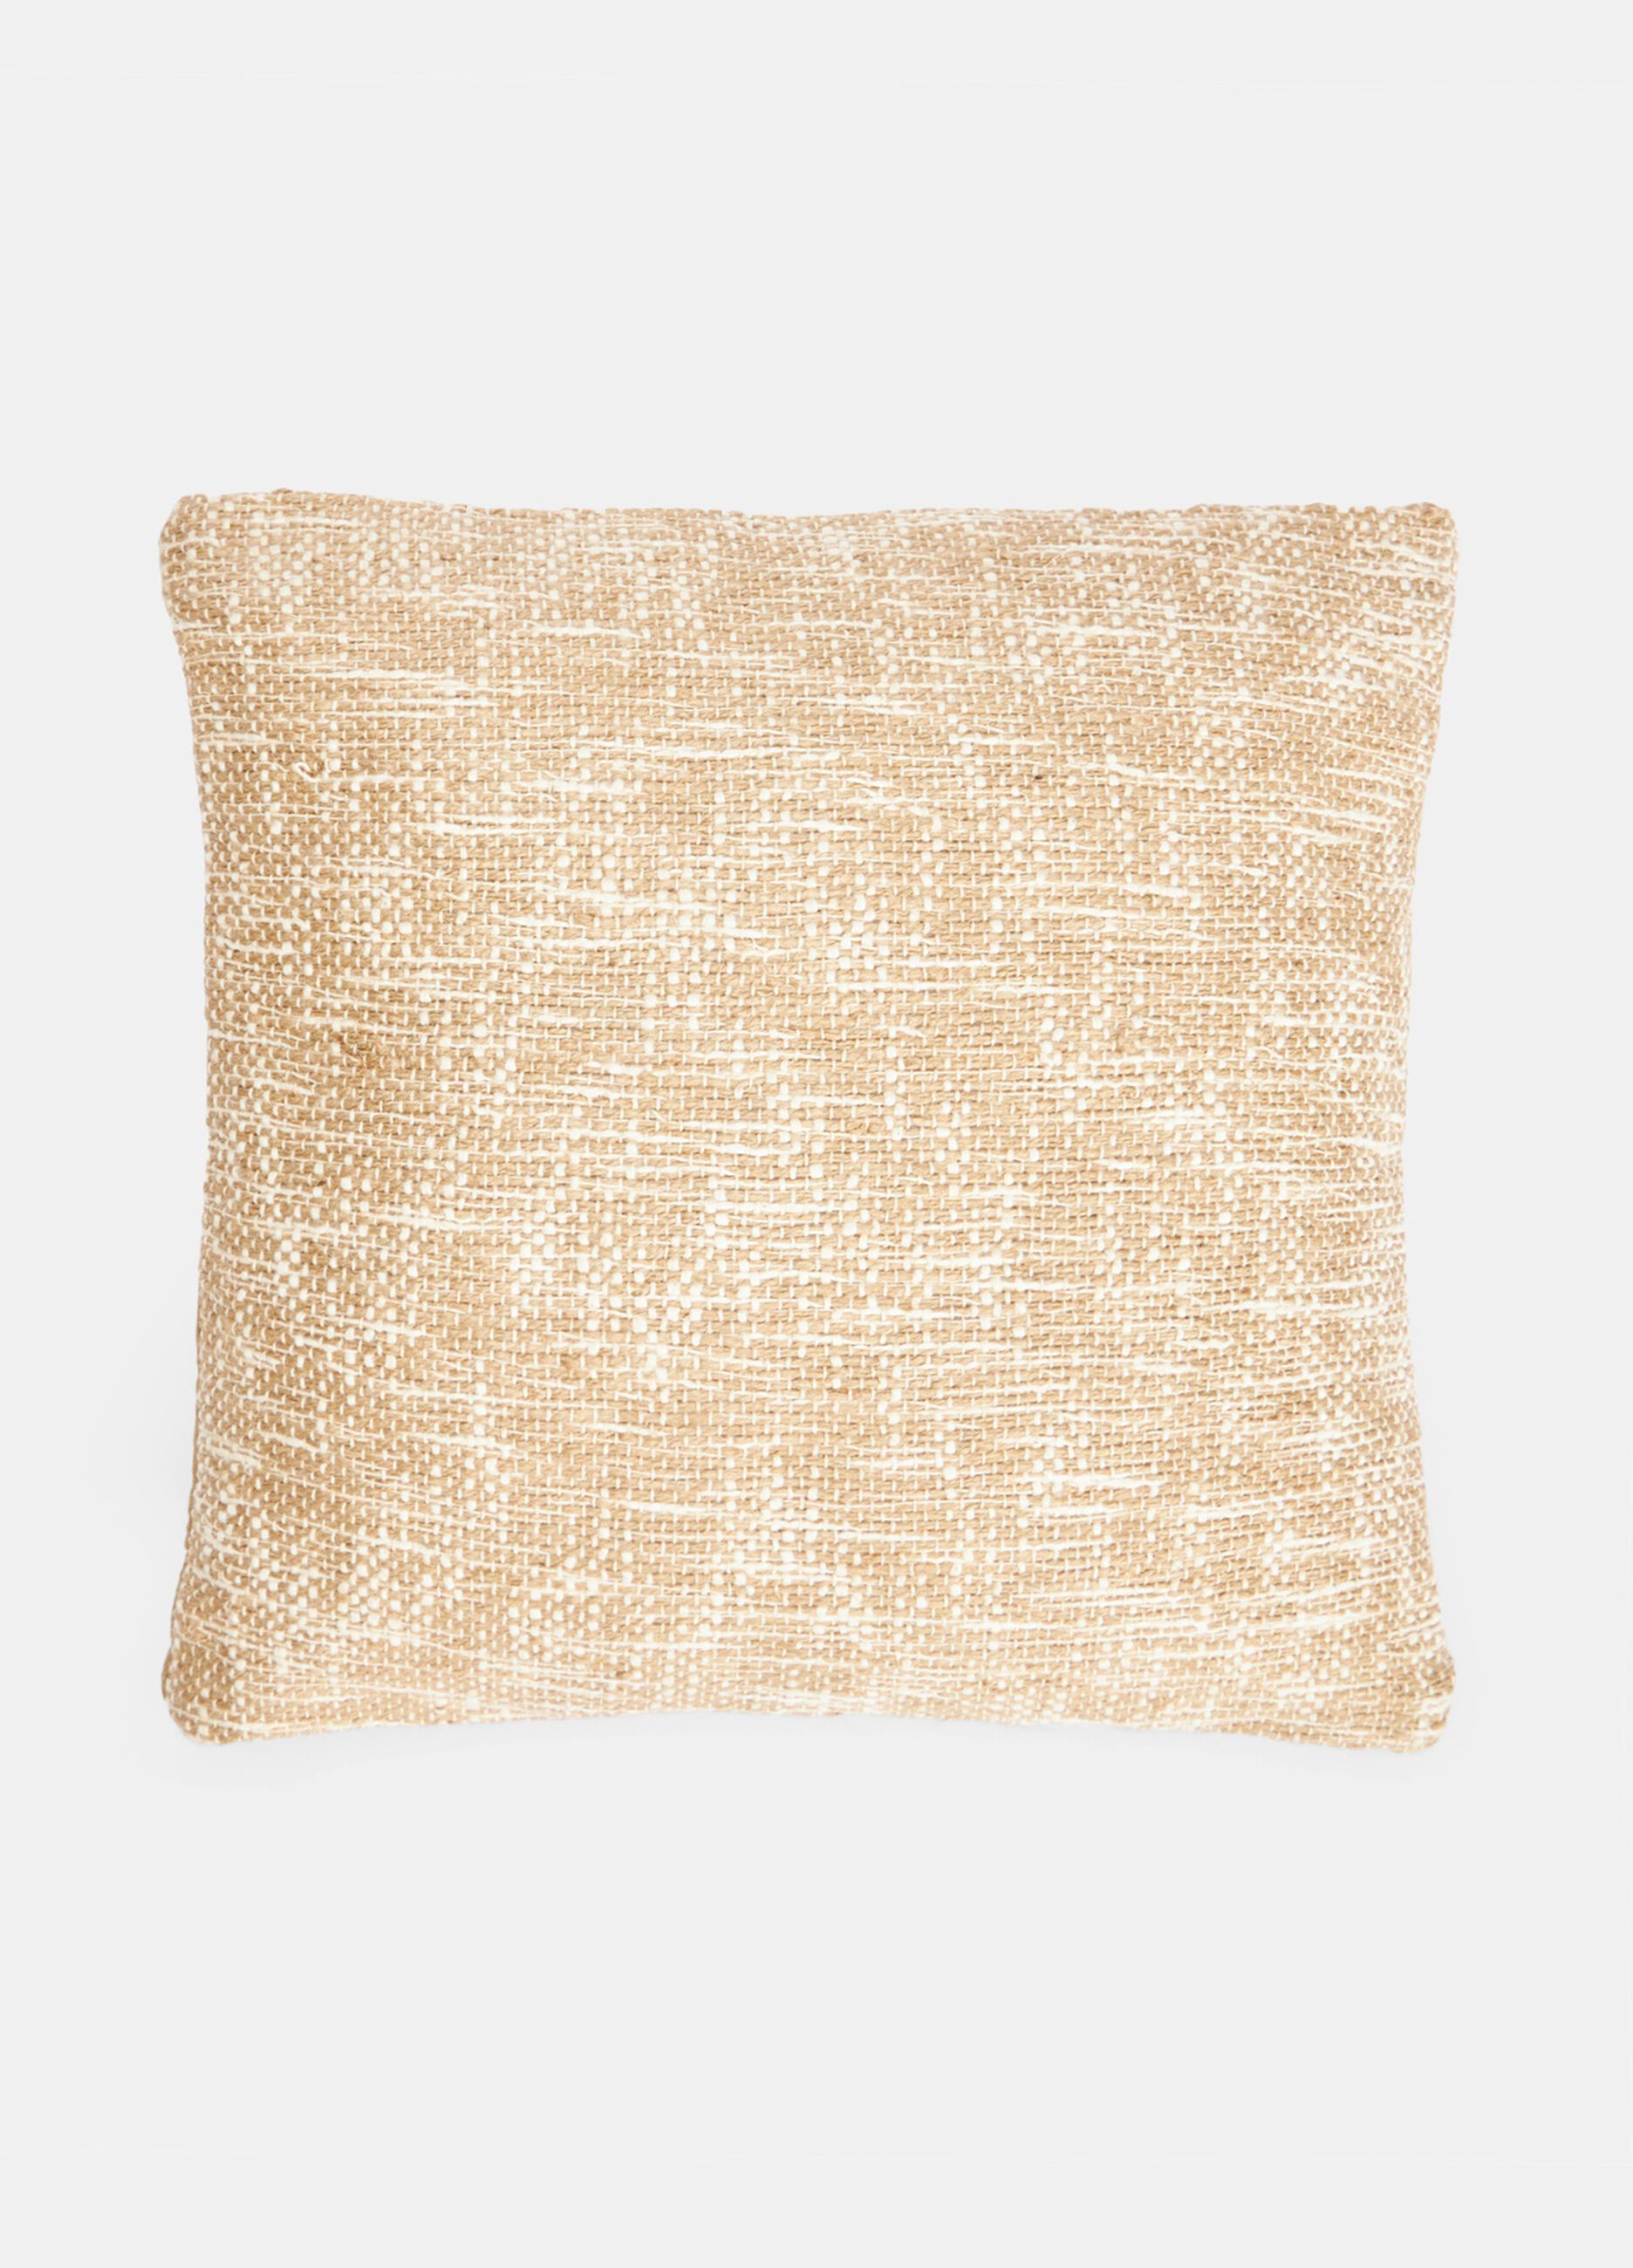 Square cushion in jute blend